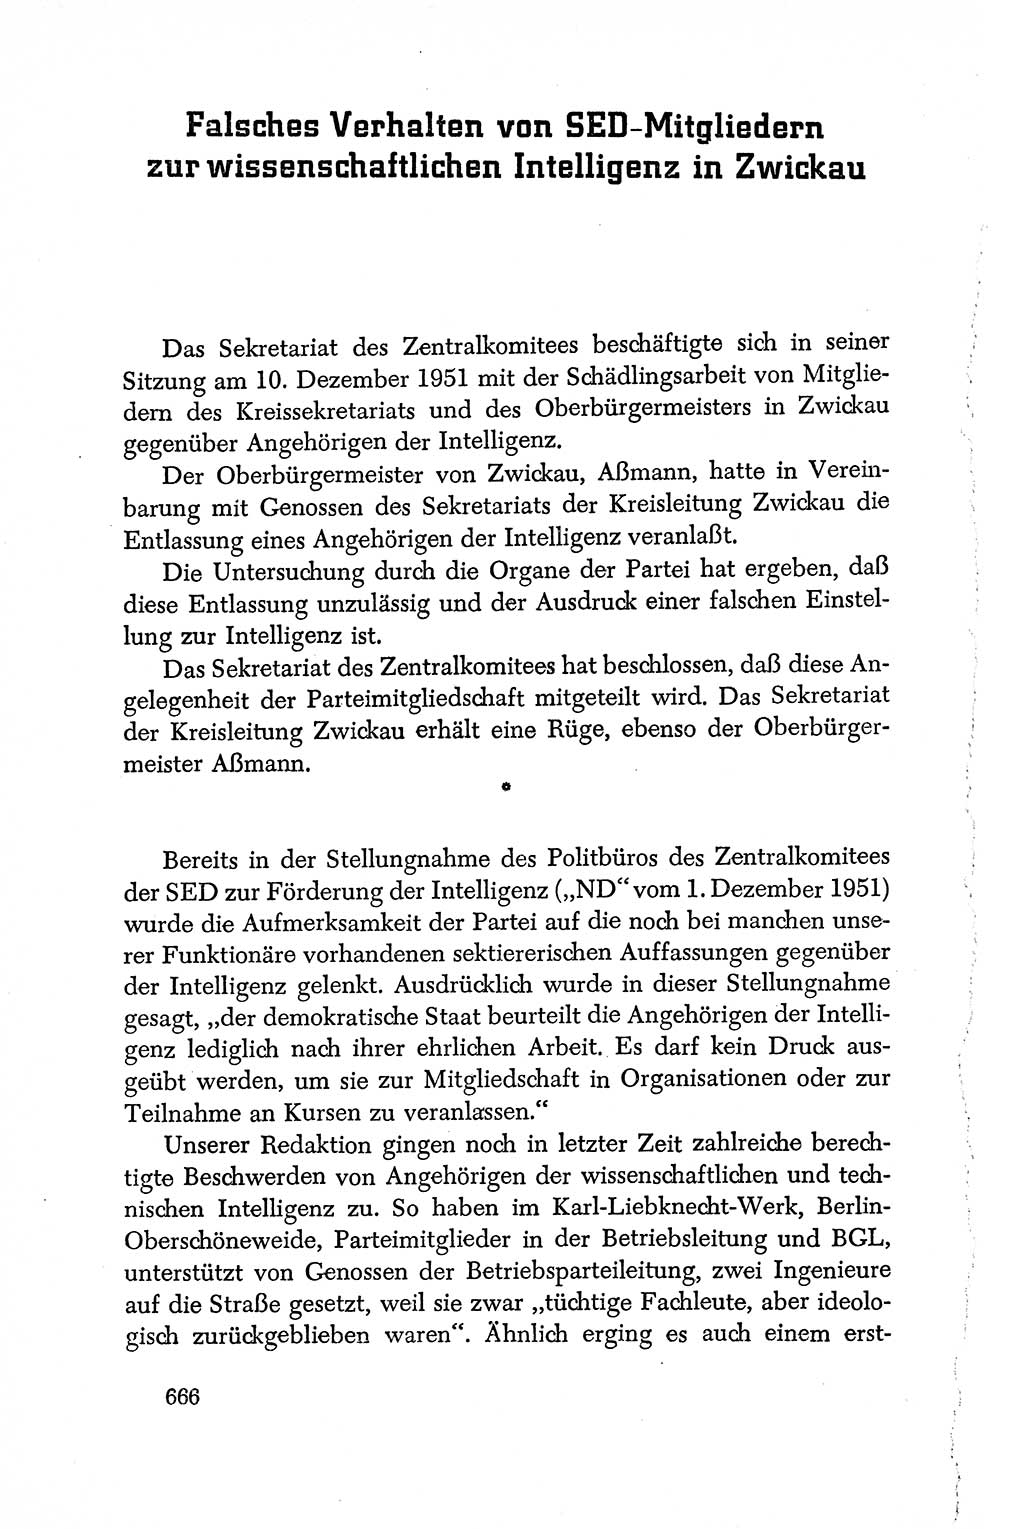 Dokumente der Sozialistischen Einheitspartei Deutschlands (SED) [Deutsche Demokratische Republik (DDR)] 1950-1952, Seite 666 (Dok. SED DDR 1950-1952, S. 666)